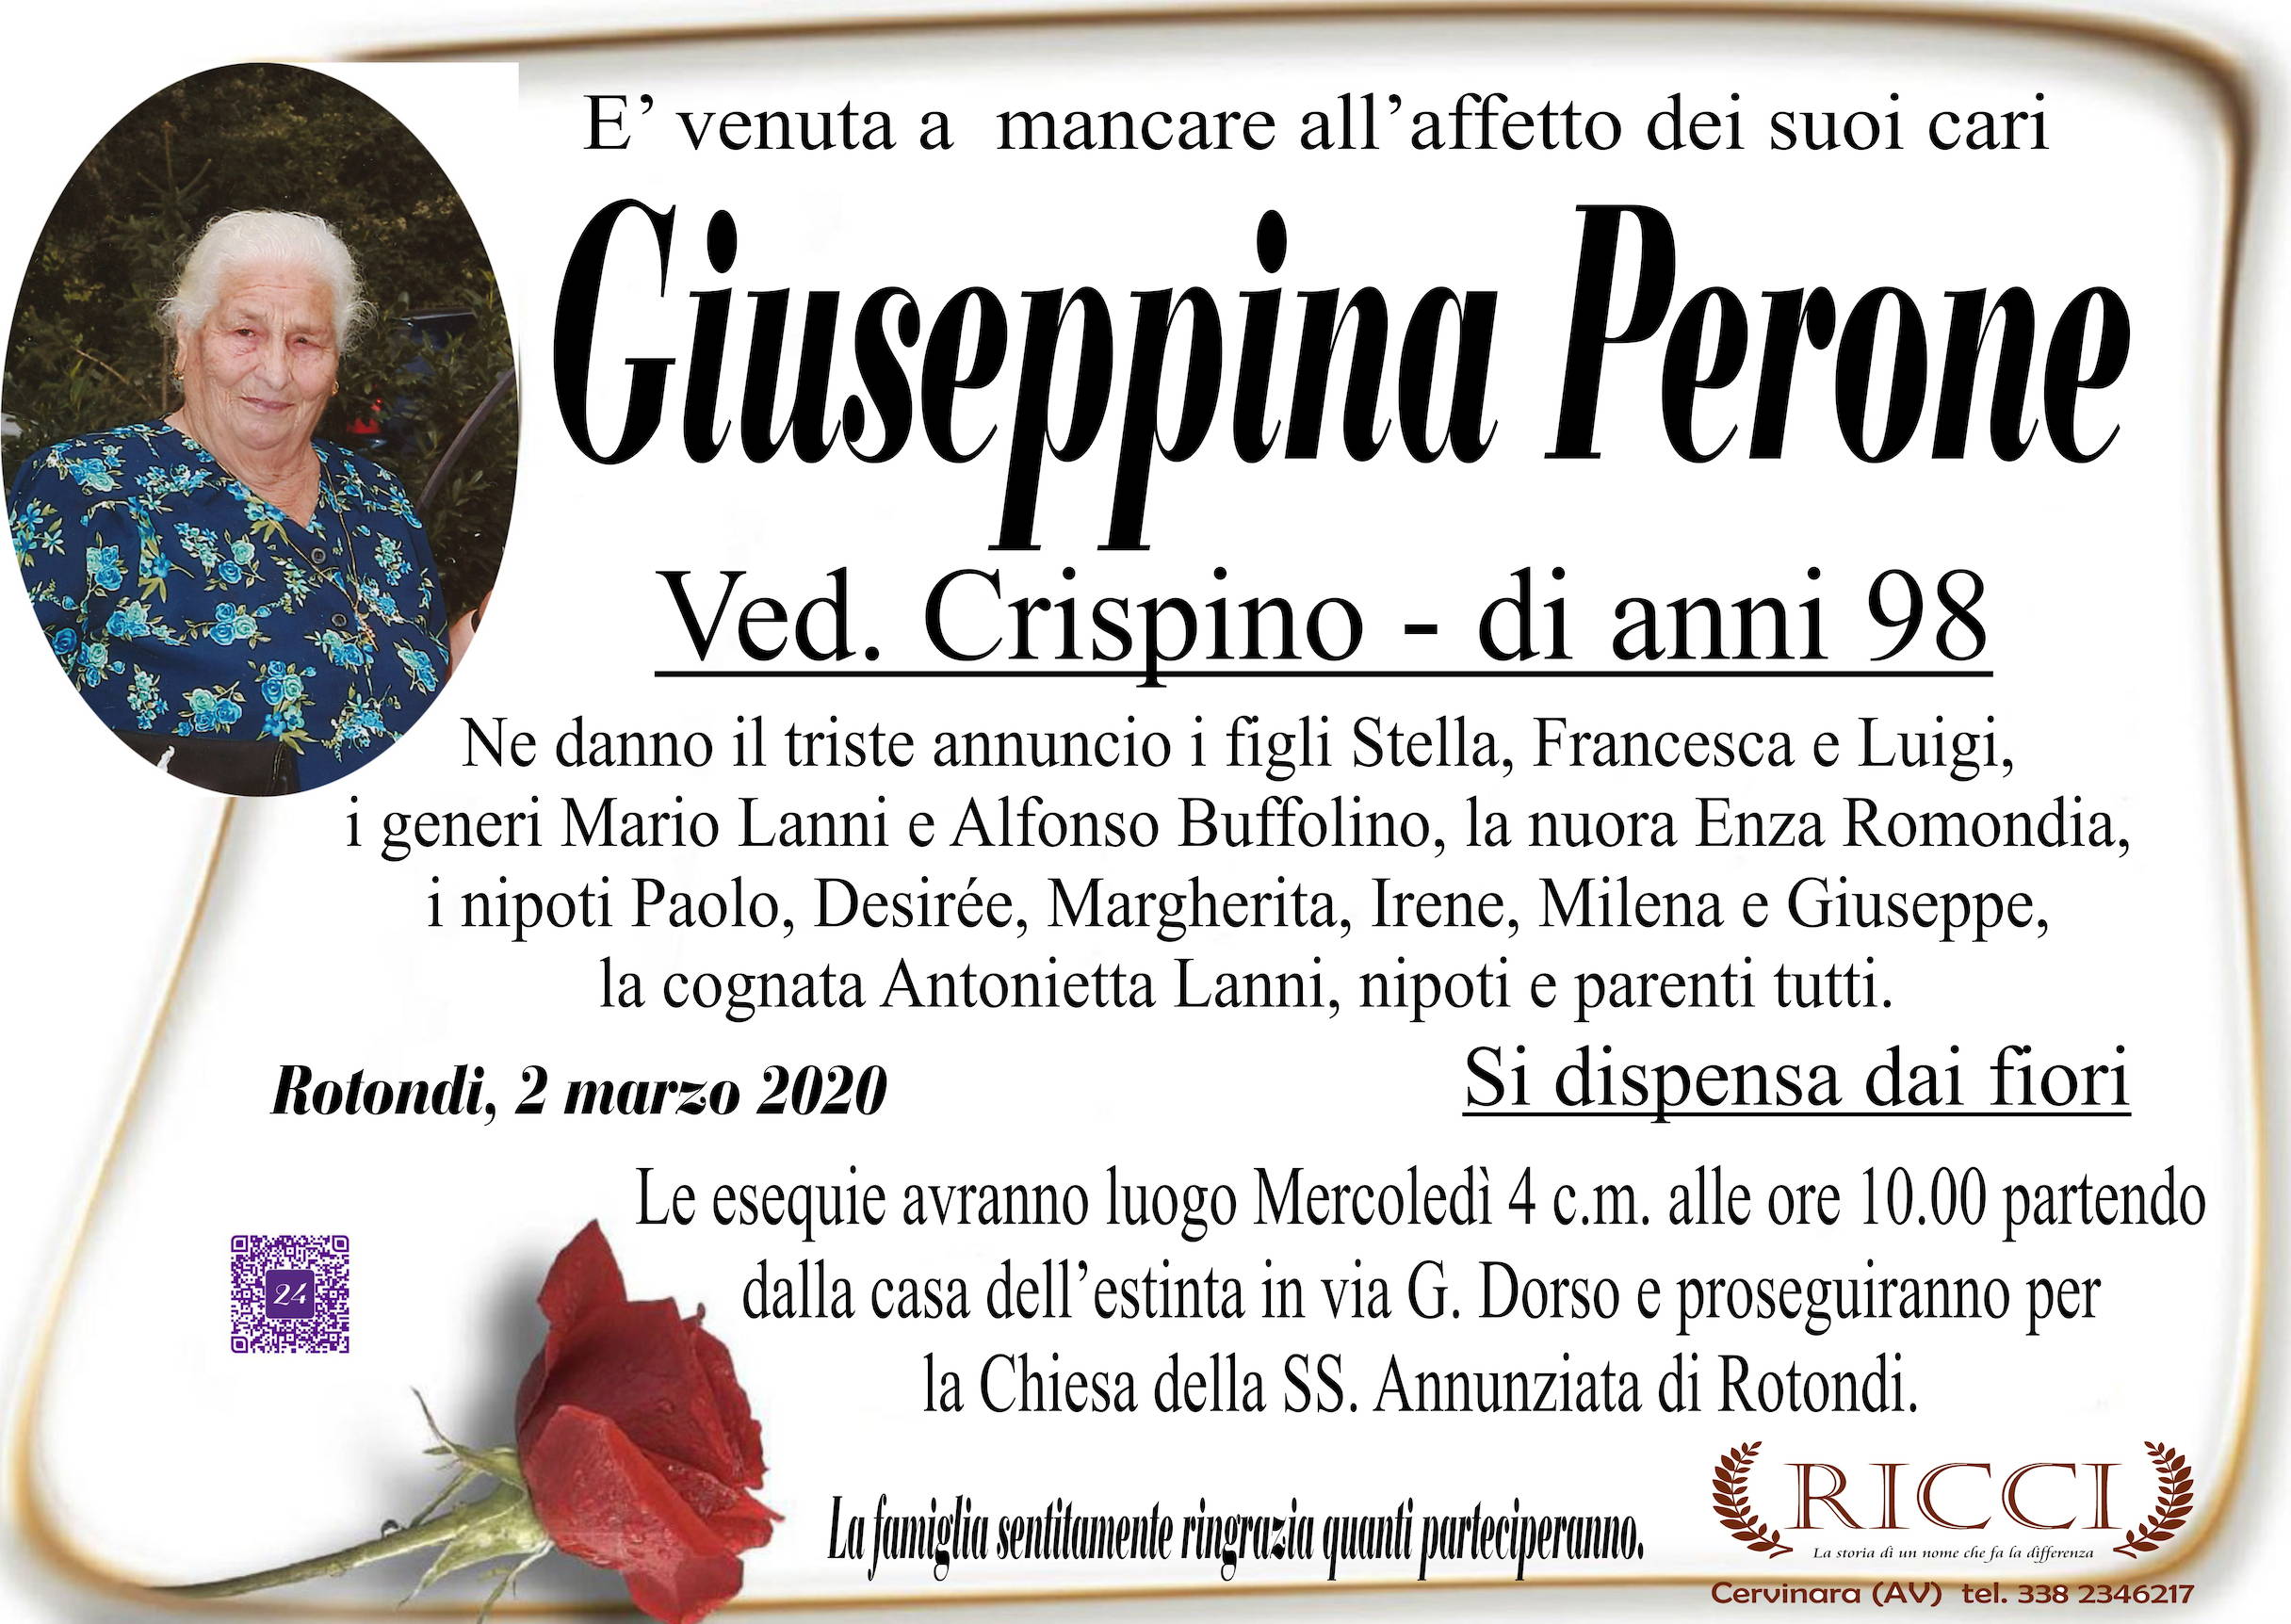 Giuseppina Perone